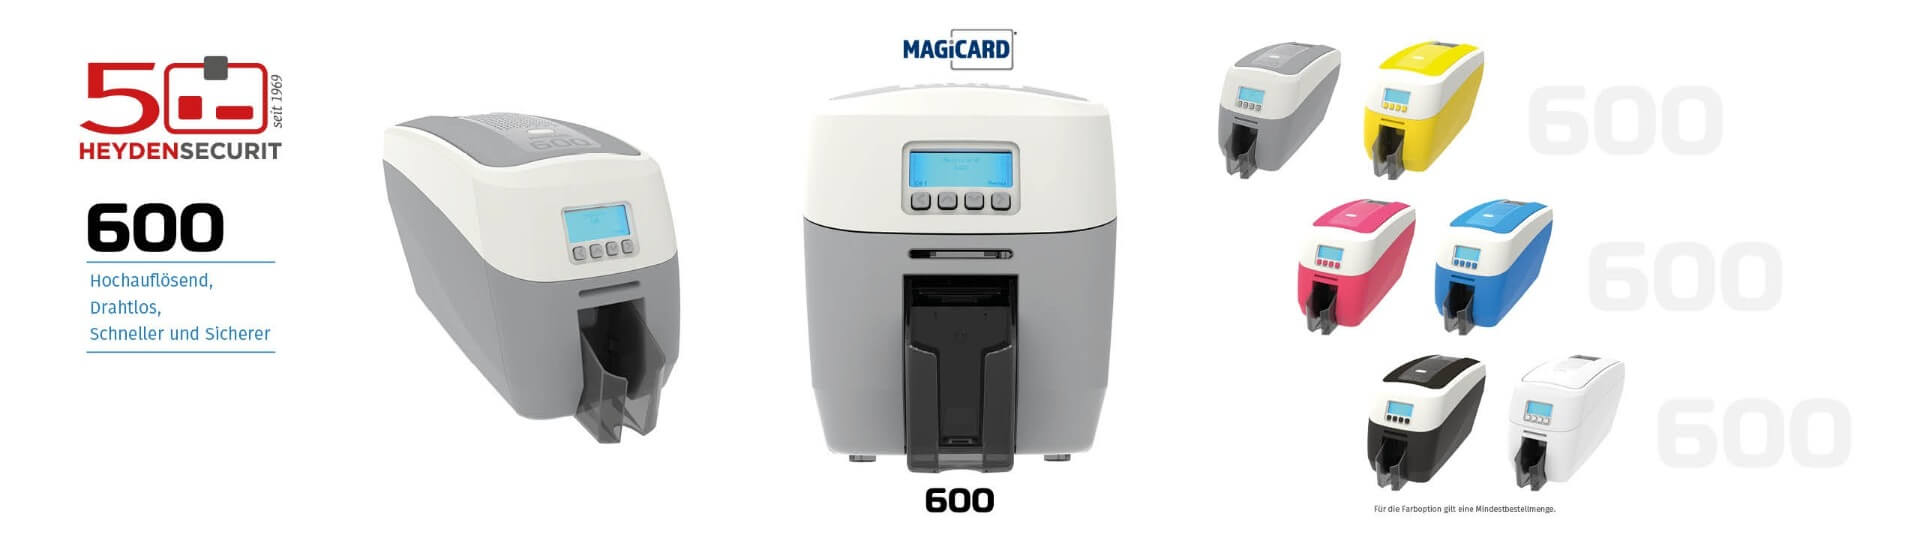 Der neue Magicard 600 Kartendrucker bei Heyden-Securit